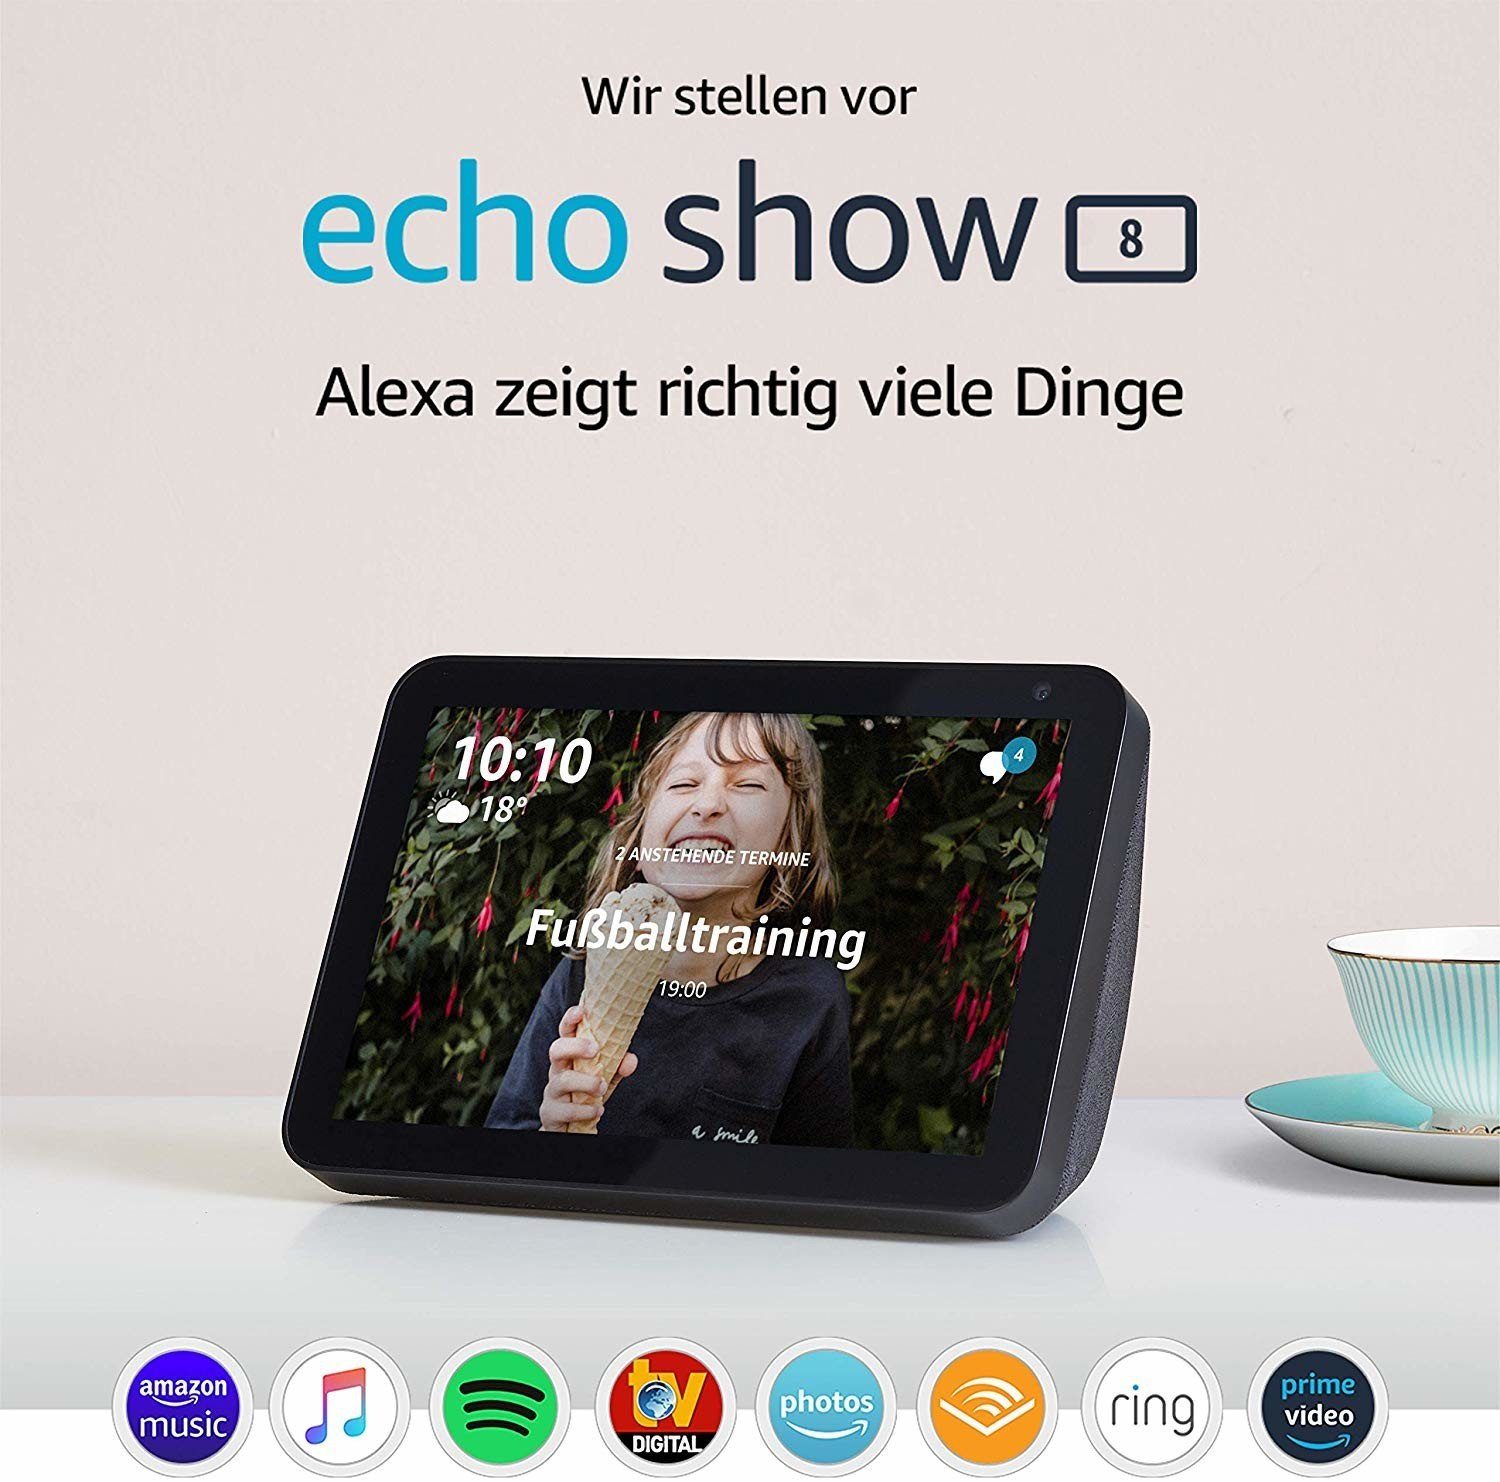 Streaming-Box 8 schwarz Amazon Show Bildschirm Hub Echo Home Sprachsteuerung Smart Alexa